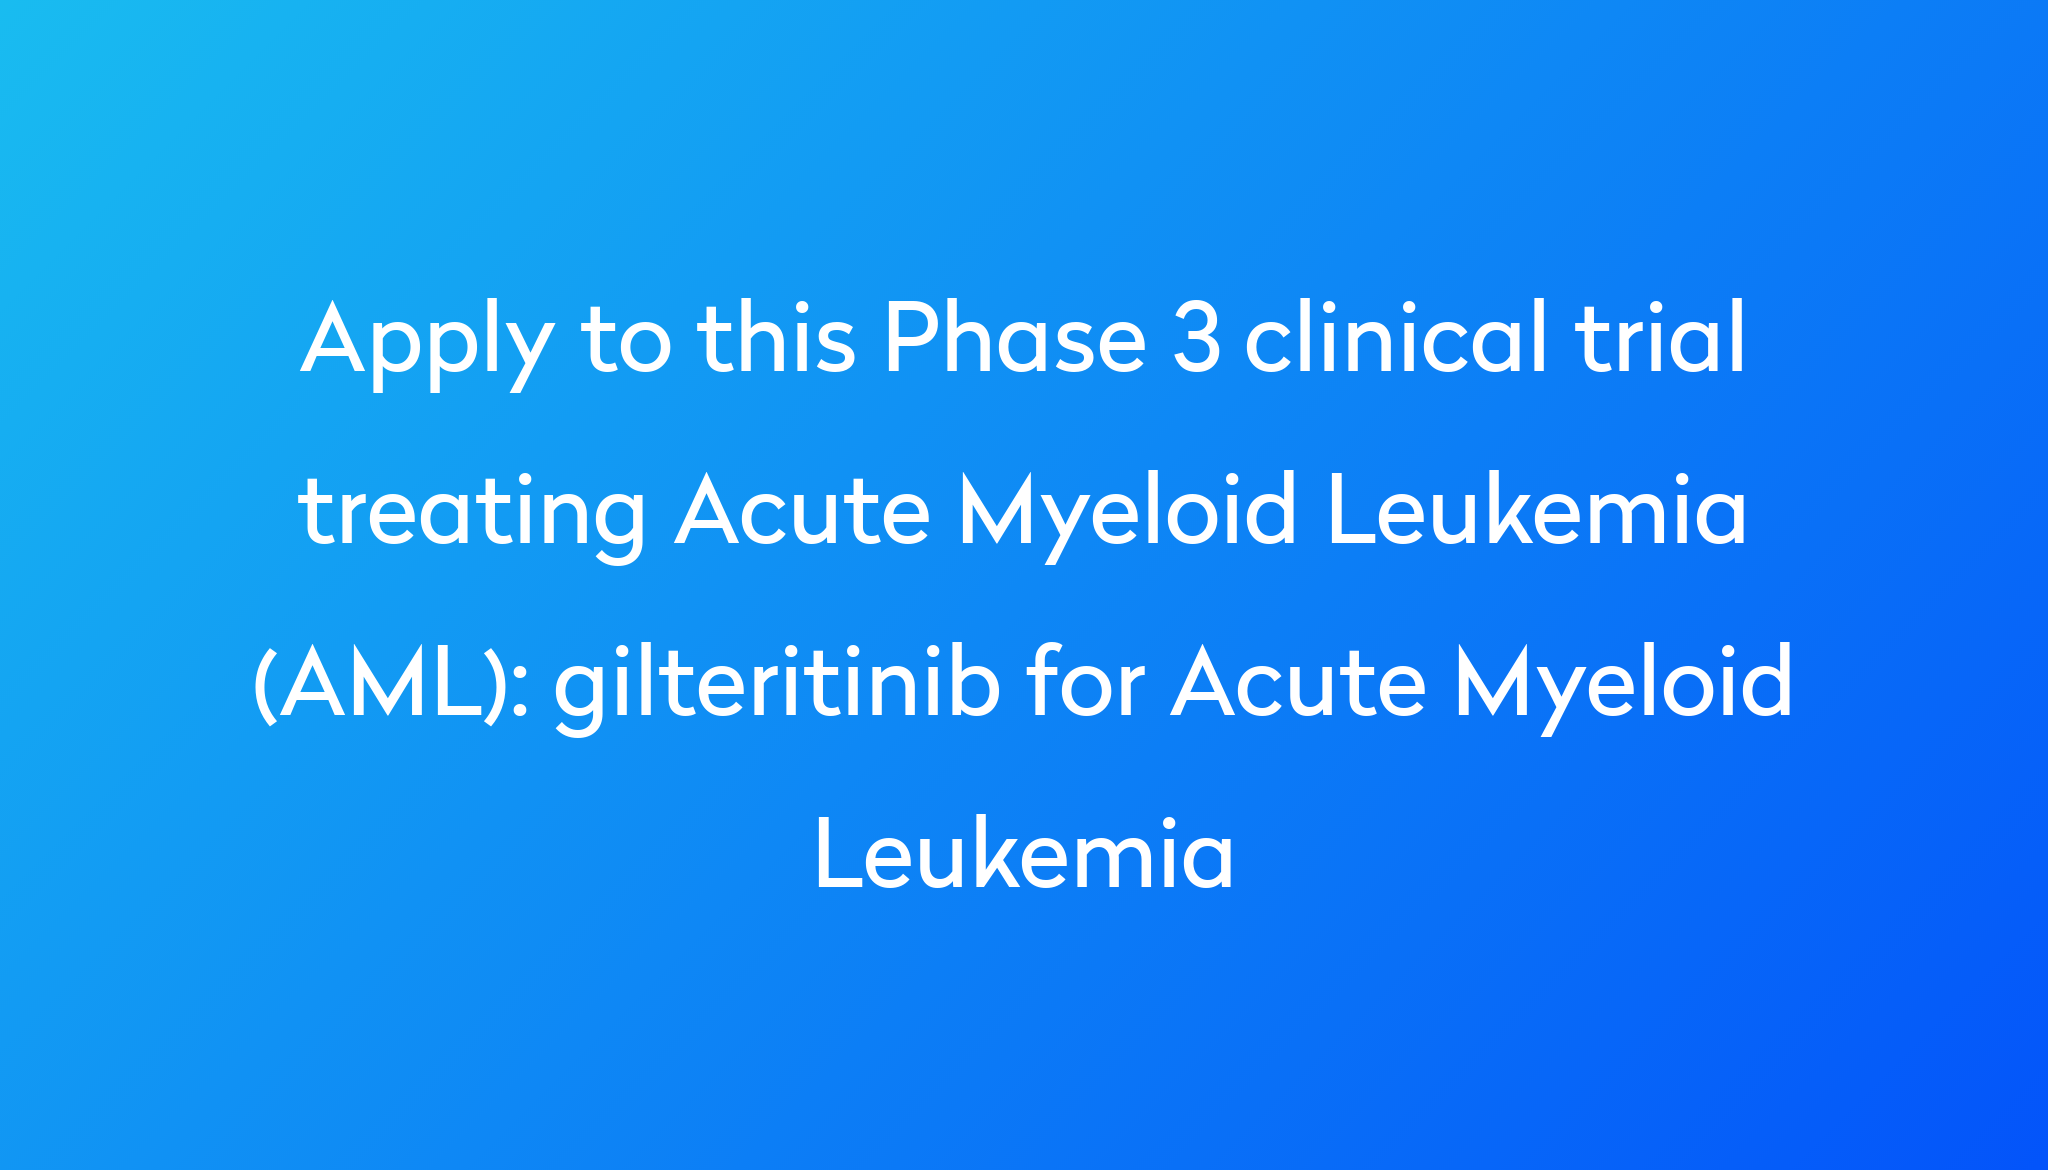 gilteritinib for Acute Myeloid Leukemia Clinical Trial 2024 Power